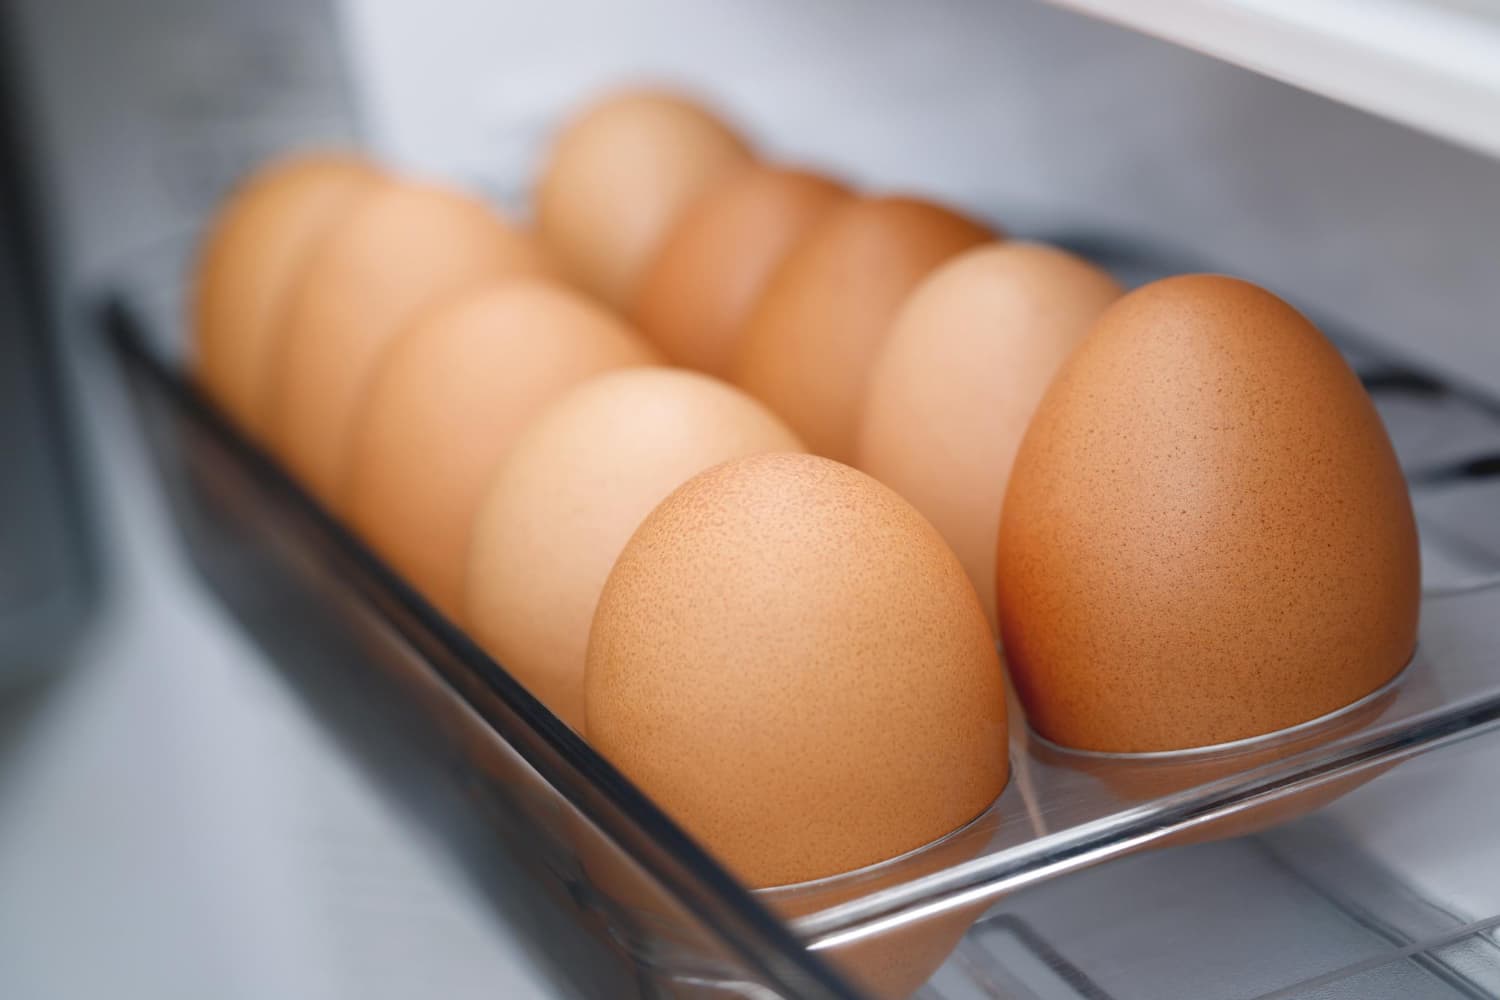 conservación de los huevos